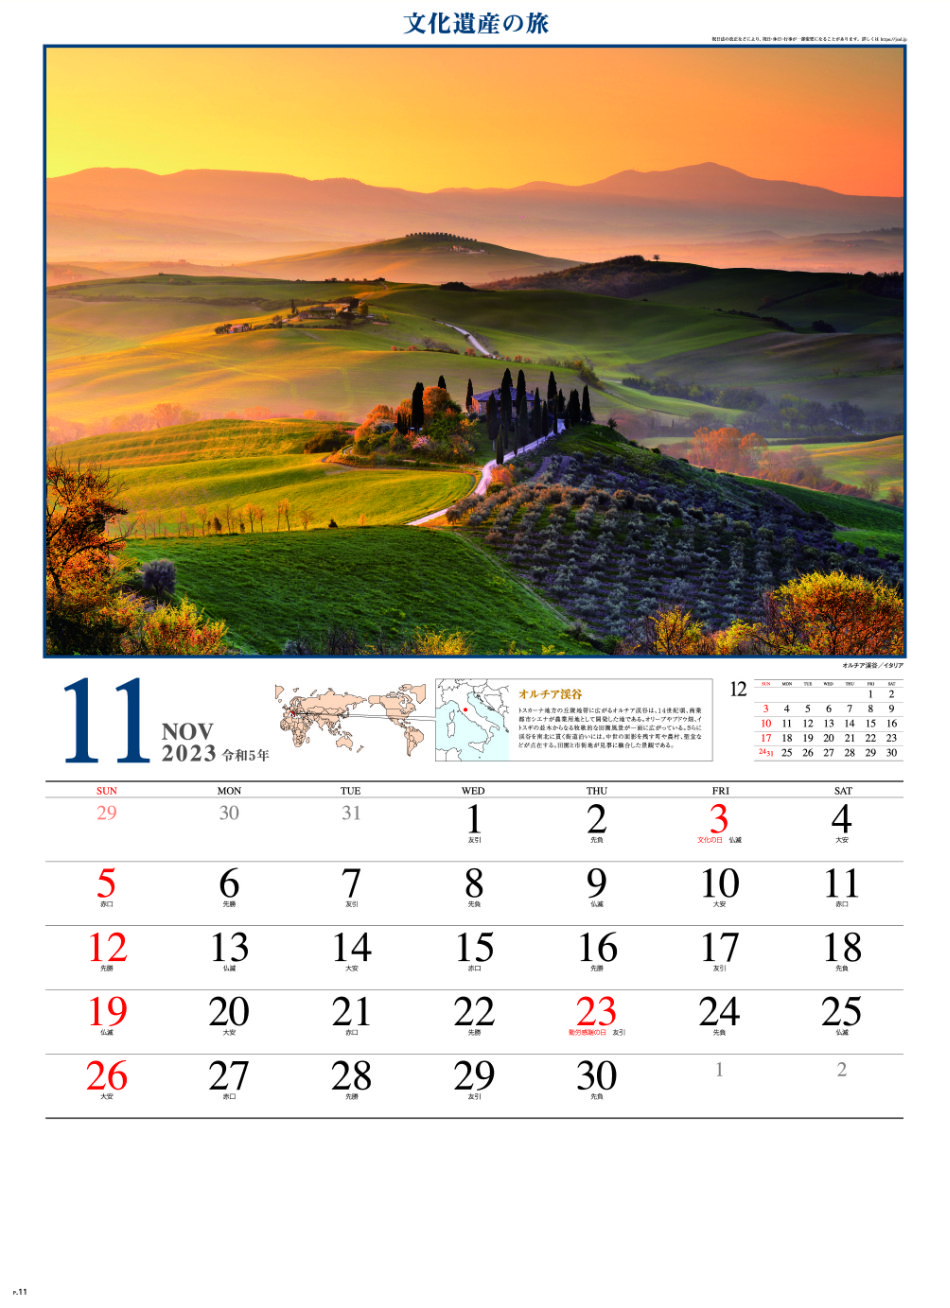 11月 オルチア渓谷(イタリア) 文化遺産の旅(ユネスコ世界遺産） 2023年カレンダーの画像